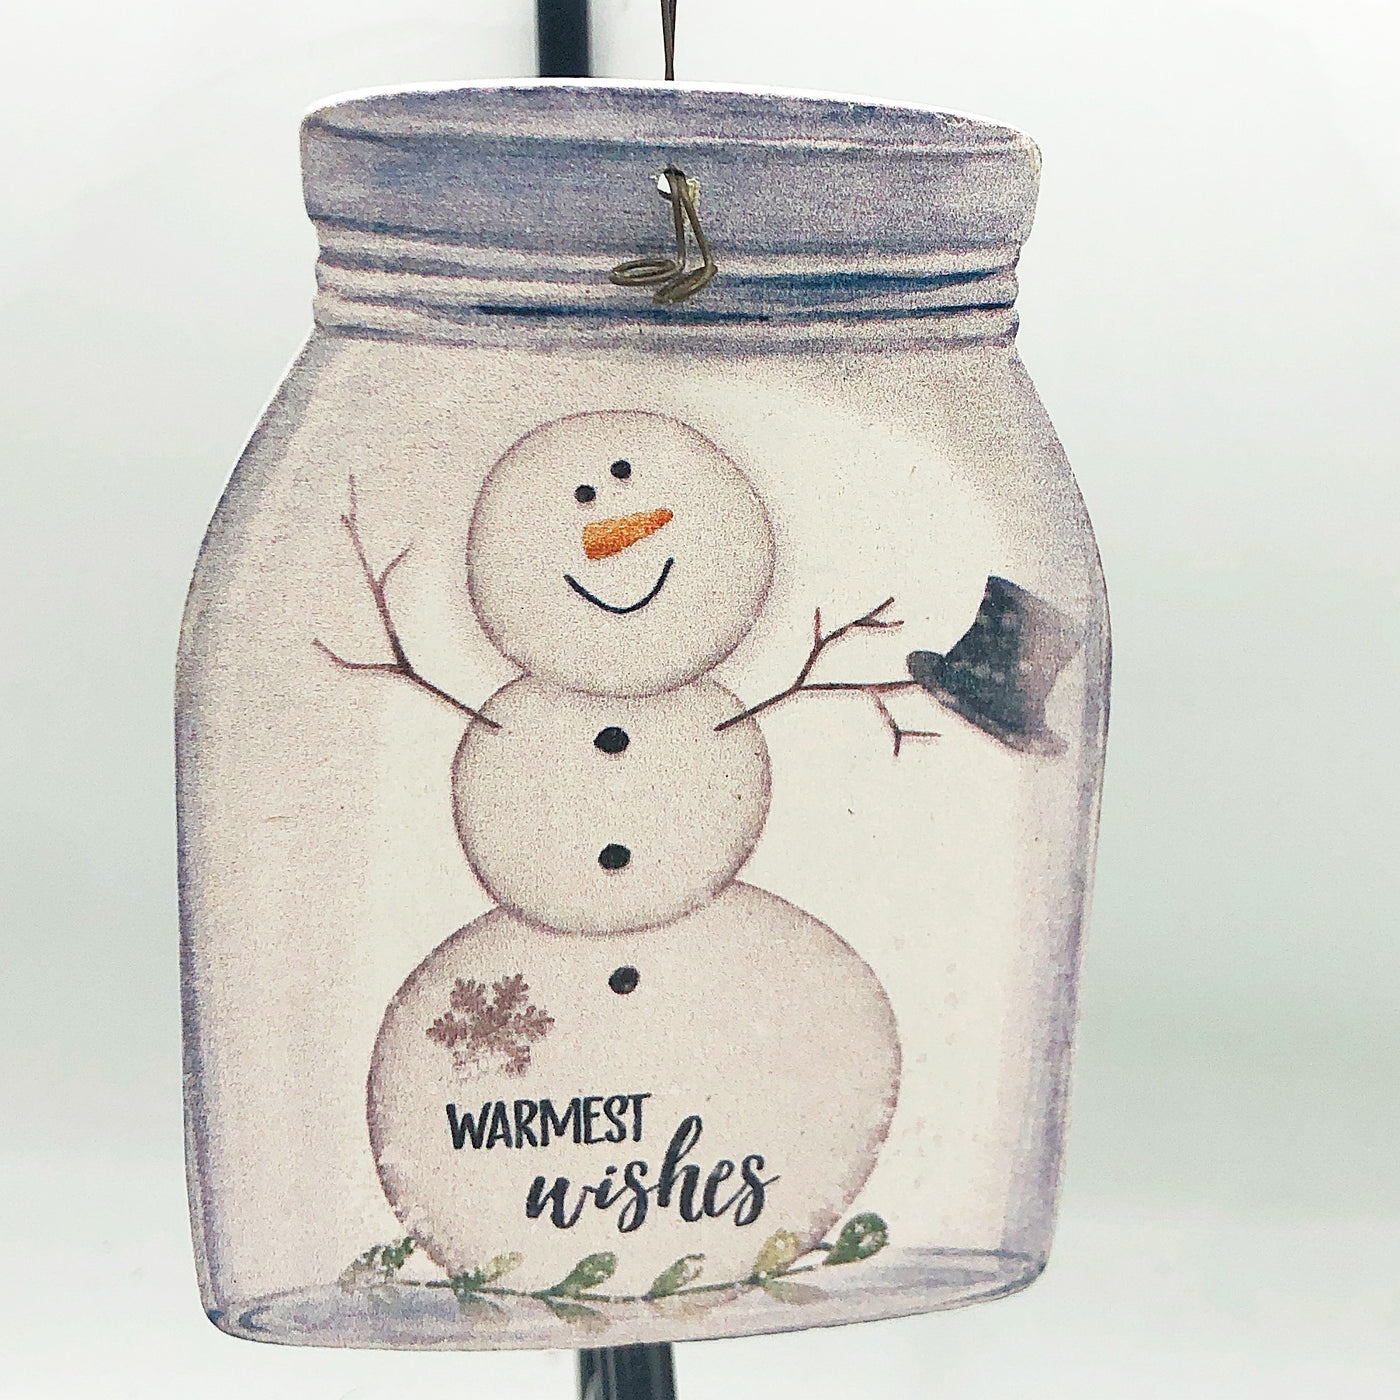 💙 Warmest Wishes Snowman Mason Jar Shaped Wooden Ornament